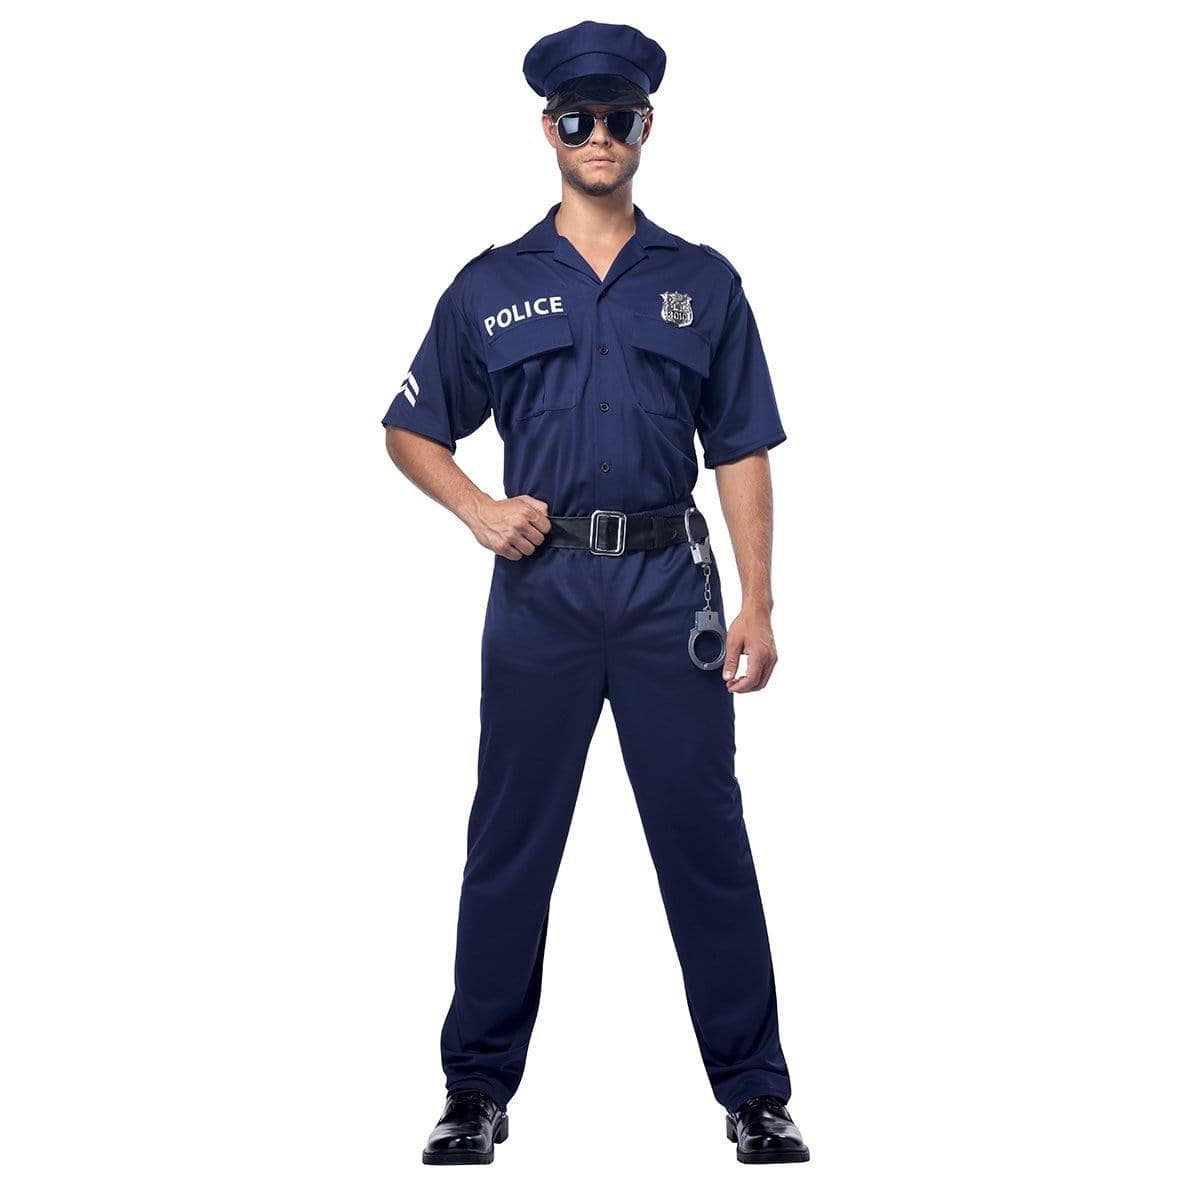 Deguisement policier 8-10 ans au meilleur prix